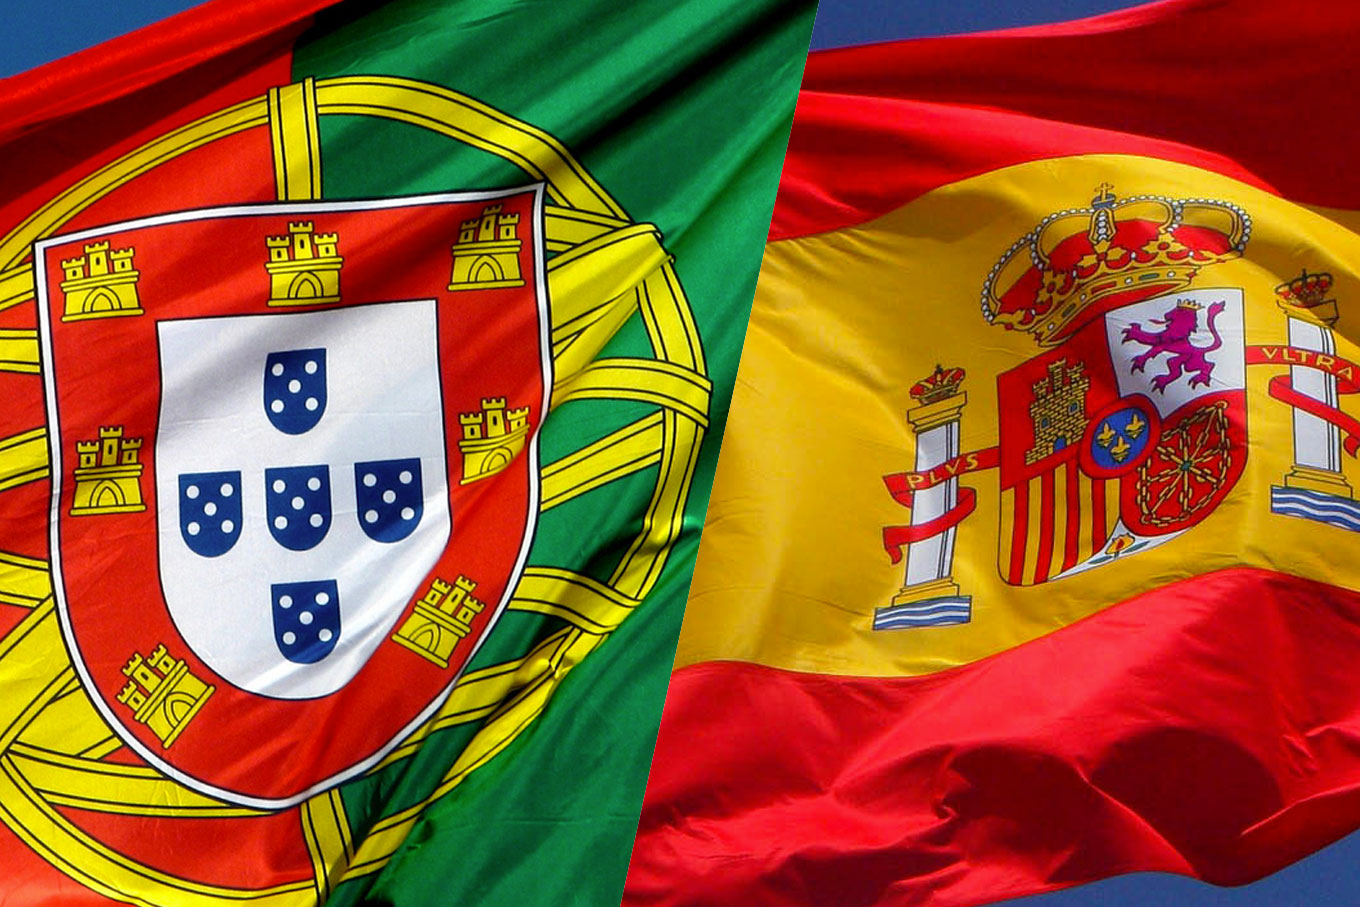 Portugal e Espanha